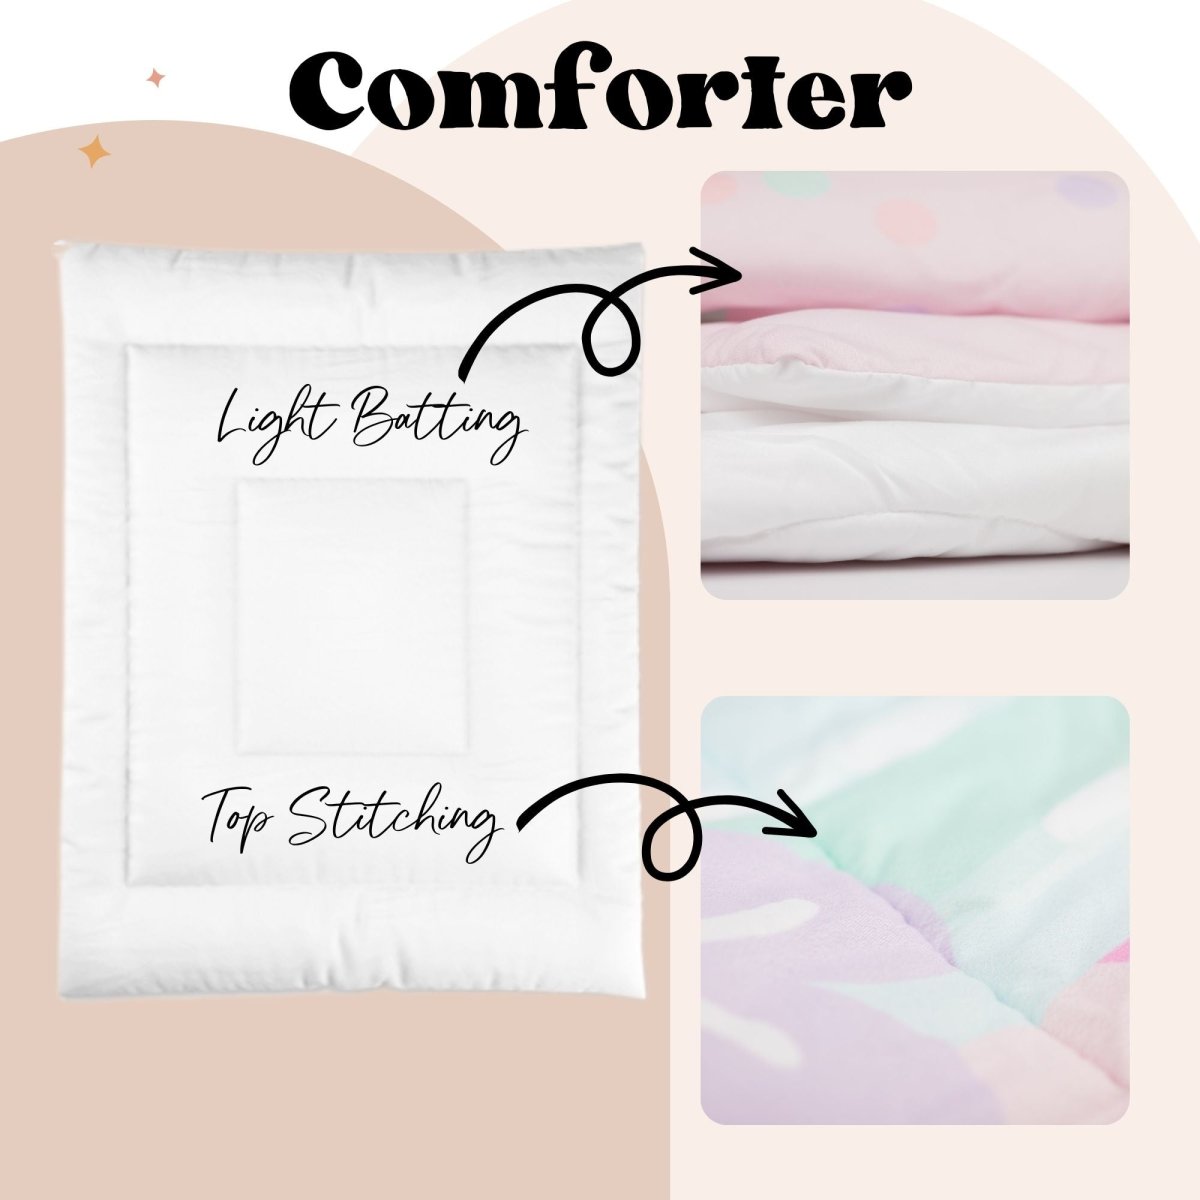 Farm Girl Kids Bedding Set (Comforter or Duvet Cover) - Farm Girl, gender_girl, text